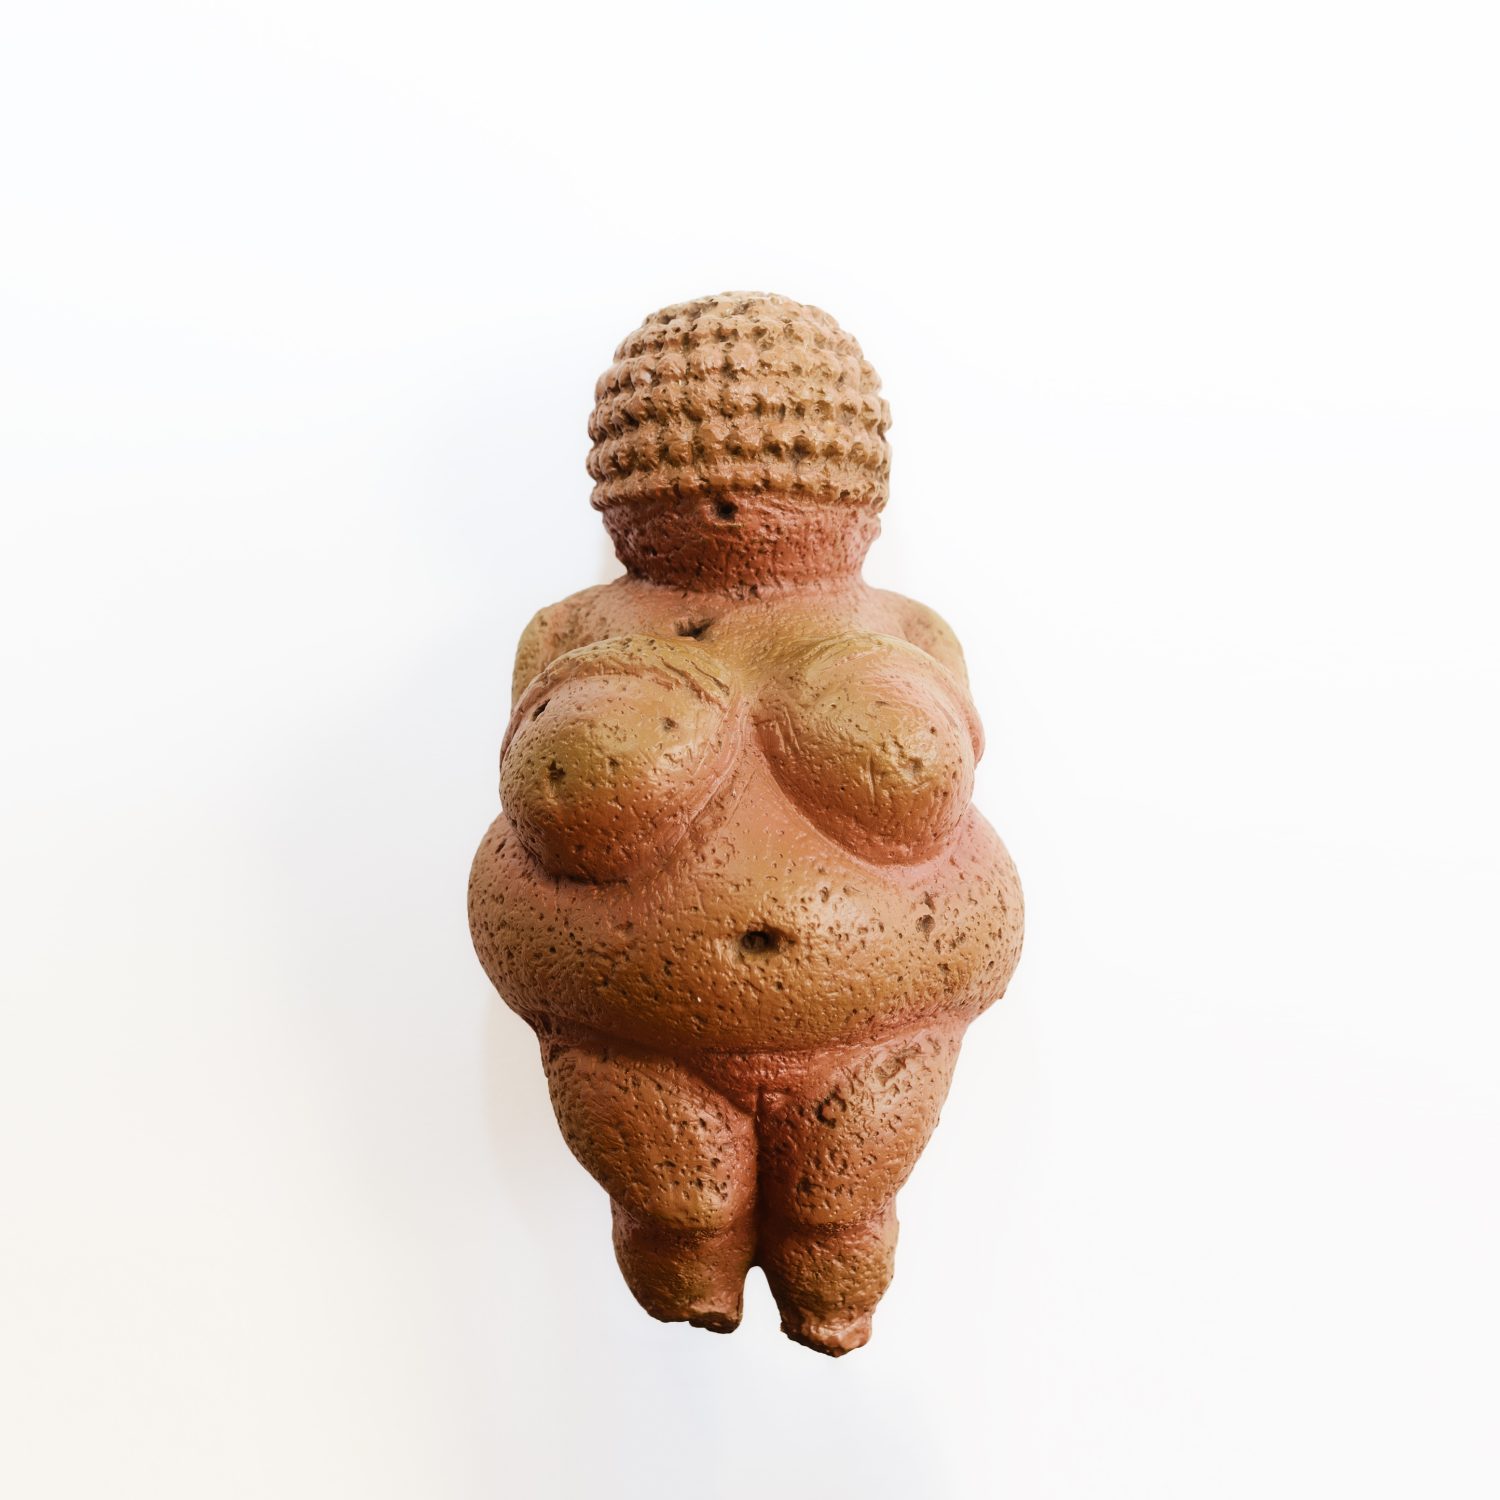 Statuetta della Venere di Willendorf, copia esatta dell'originale.  Antico simbolo della maternità e della fertilità.